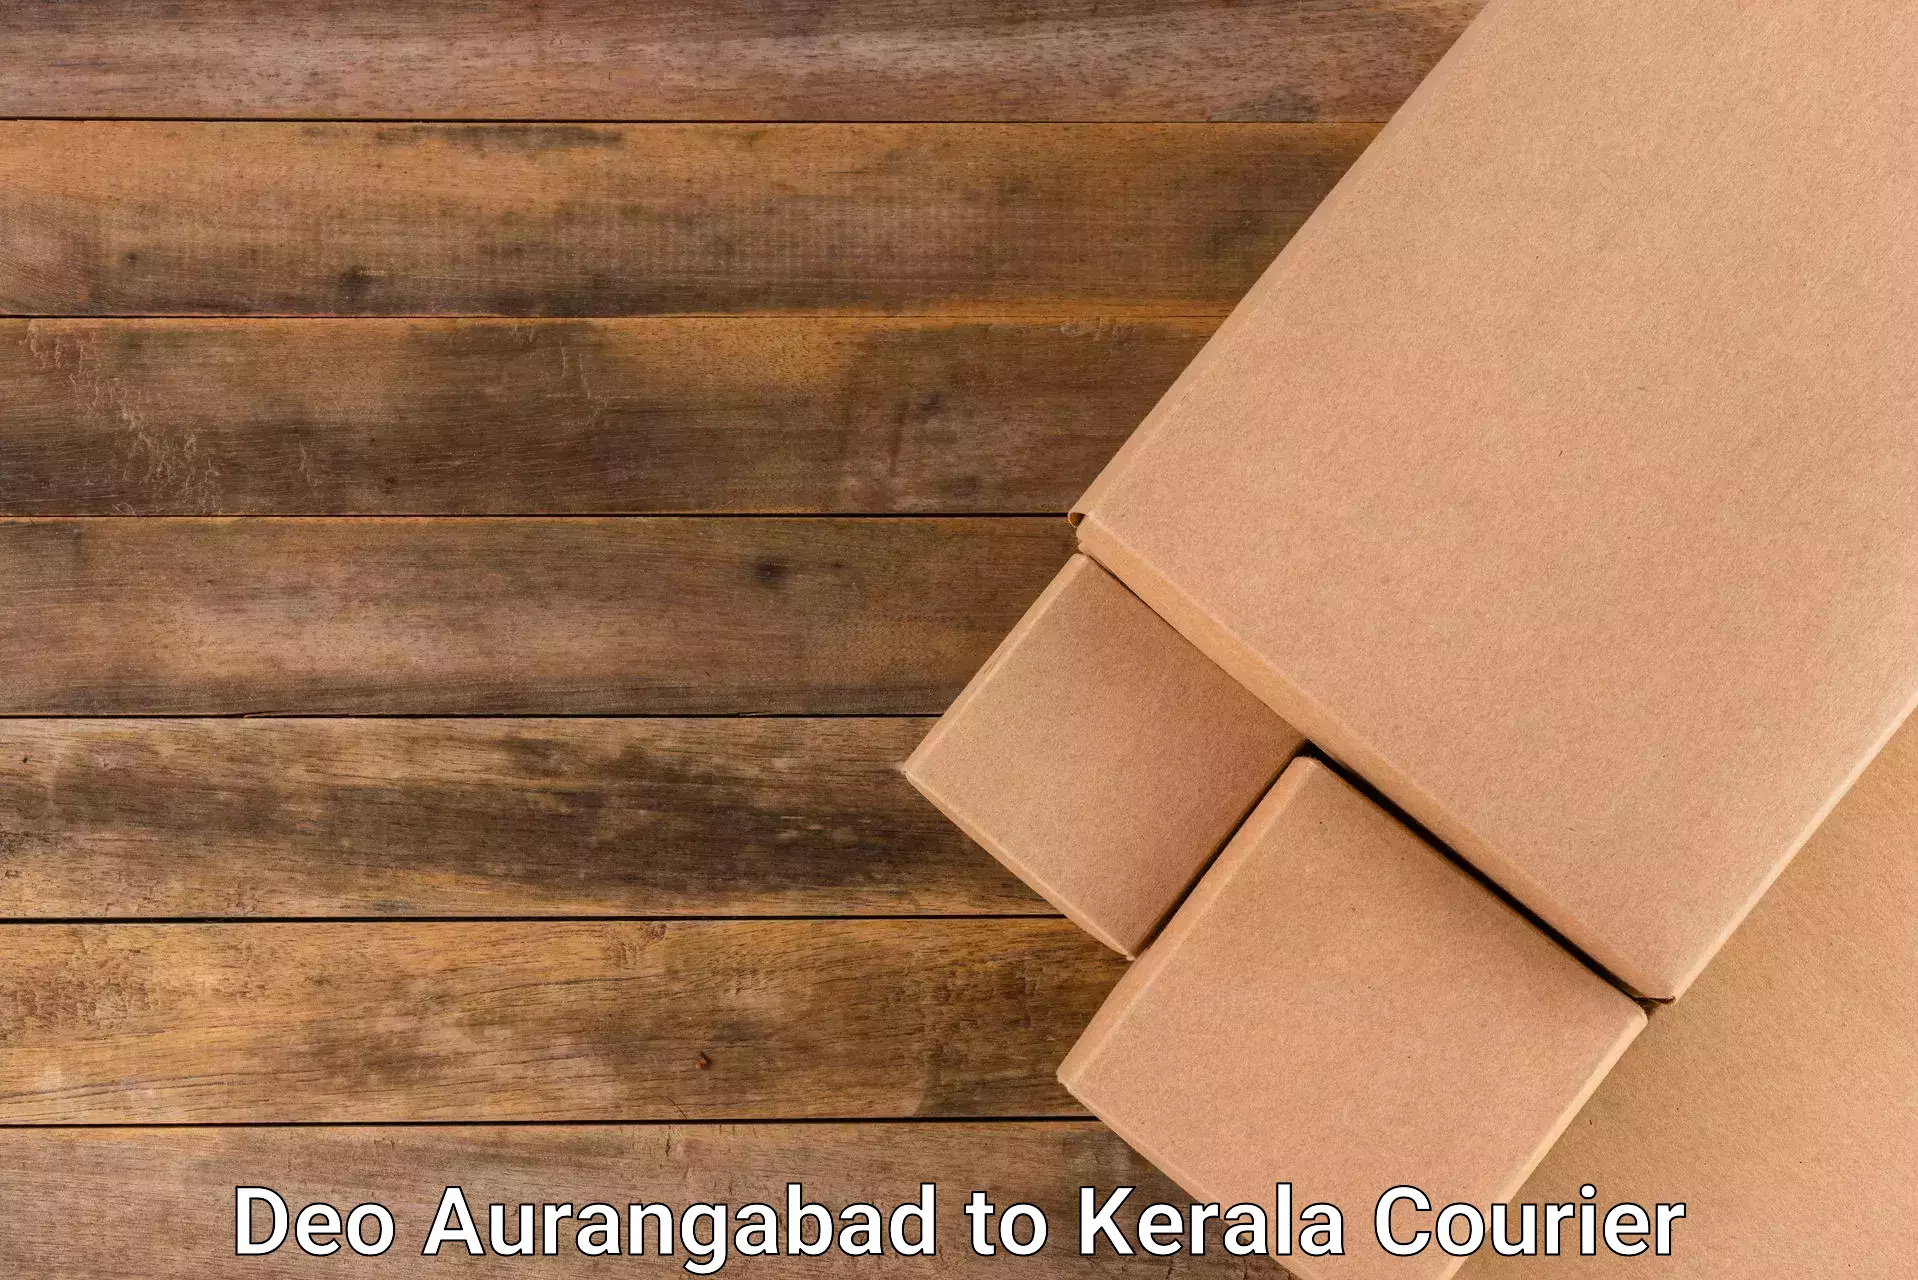 Courier service comparison Deo Aurangabad to Kerala